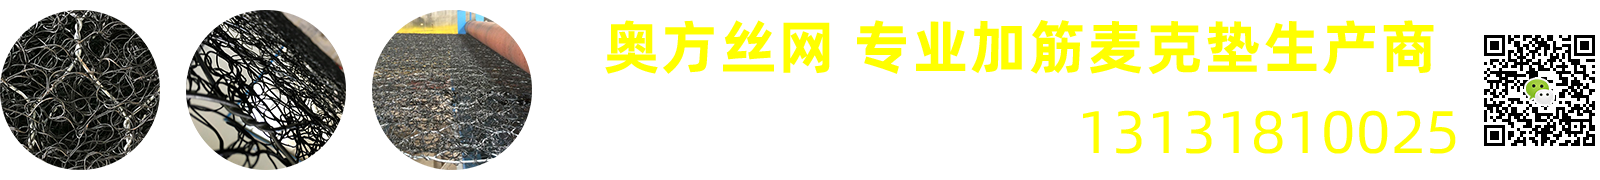 加筋麦克垫-护坡麦克垫-麦克垫厂家 - 安平县9游会丝网制品有限公司